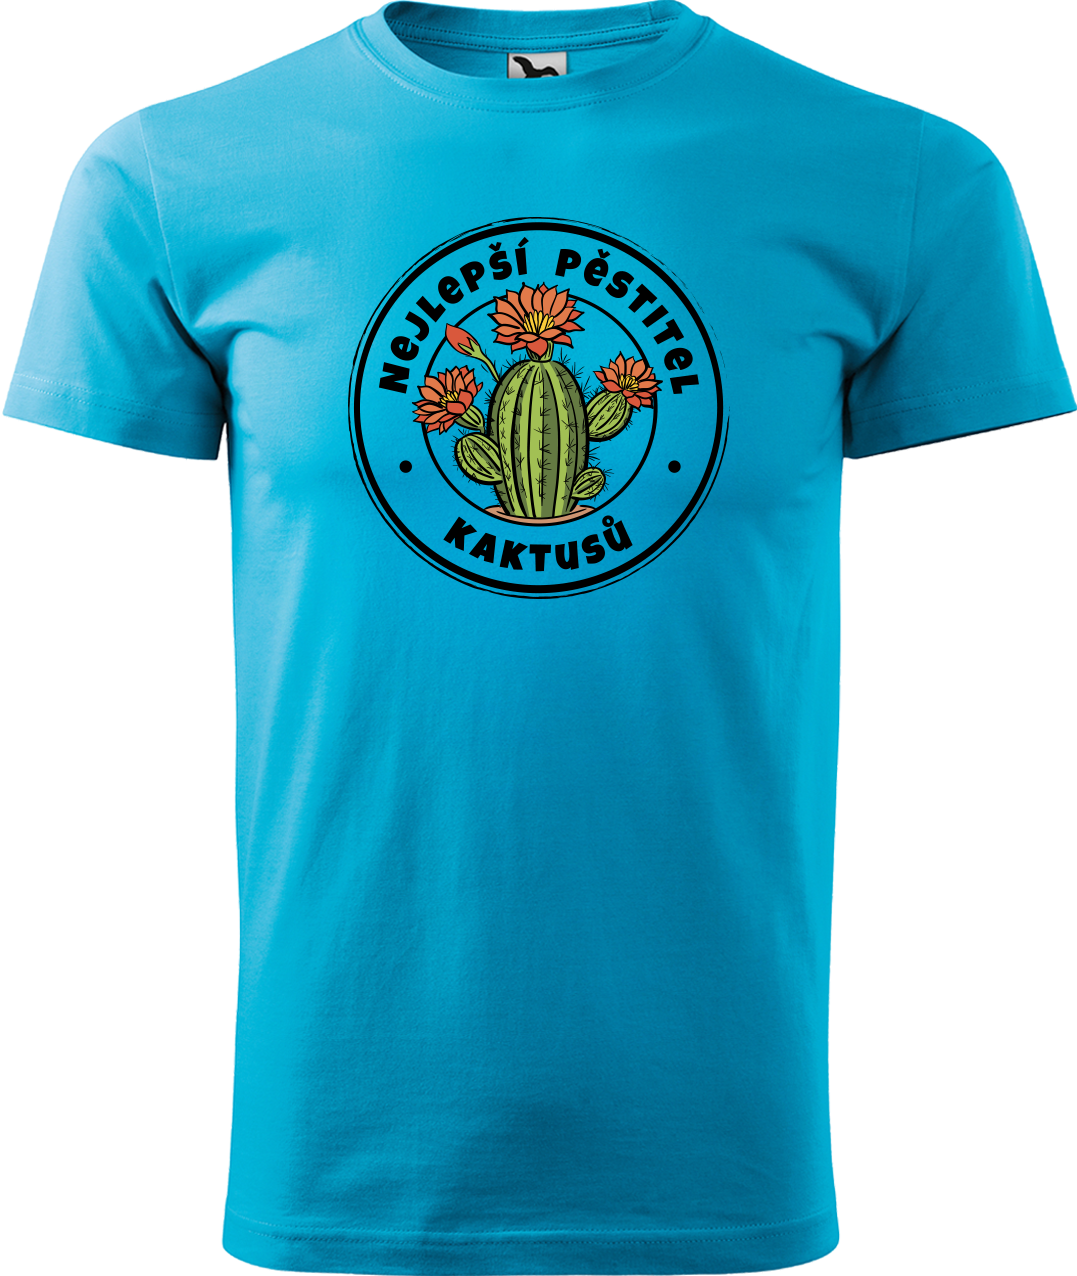 Tričko s kaktusem - Nejlepší pěstitel kaktusů Velikost: XL, Barva: Tyrkysová (44)